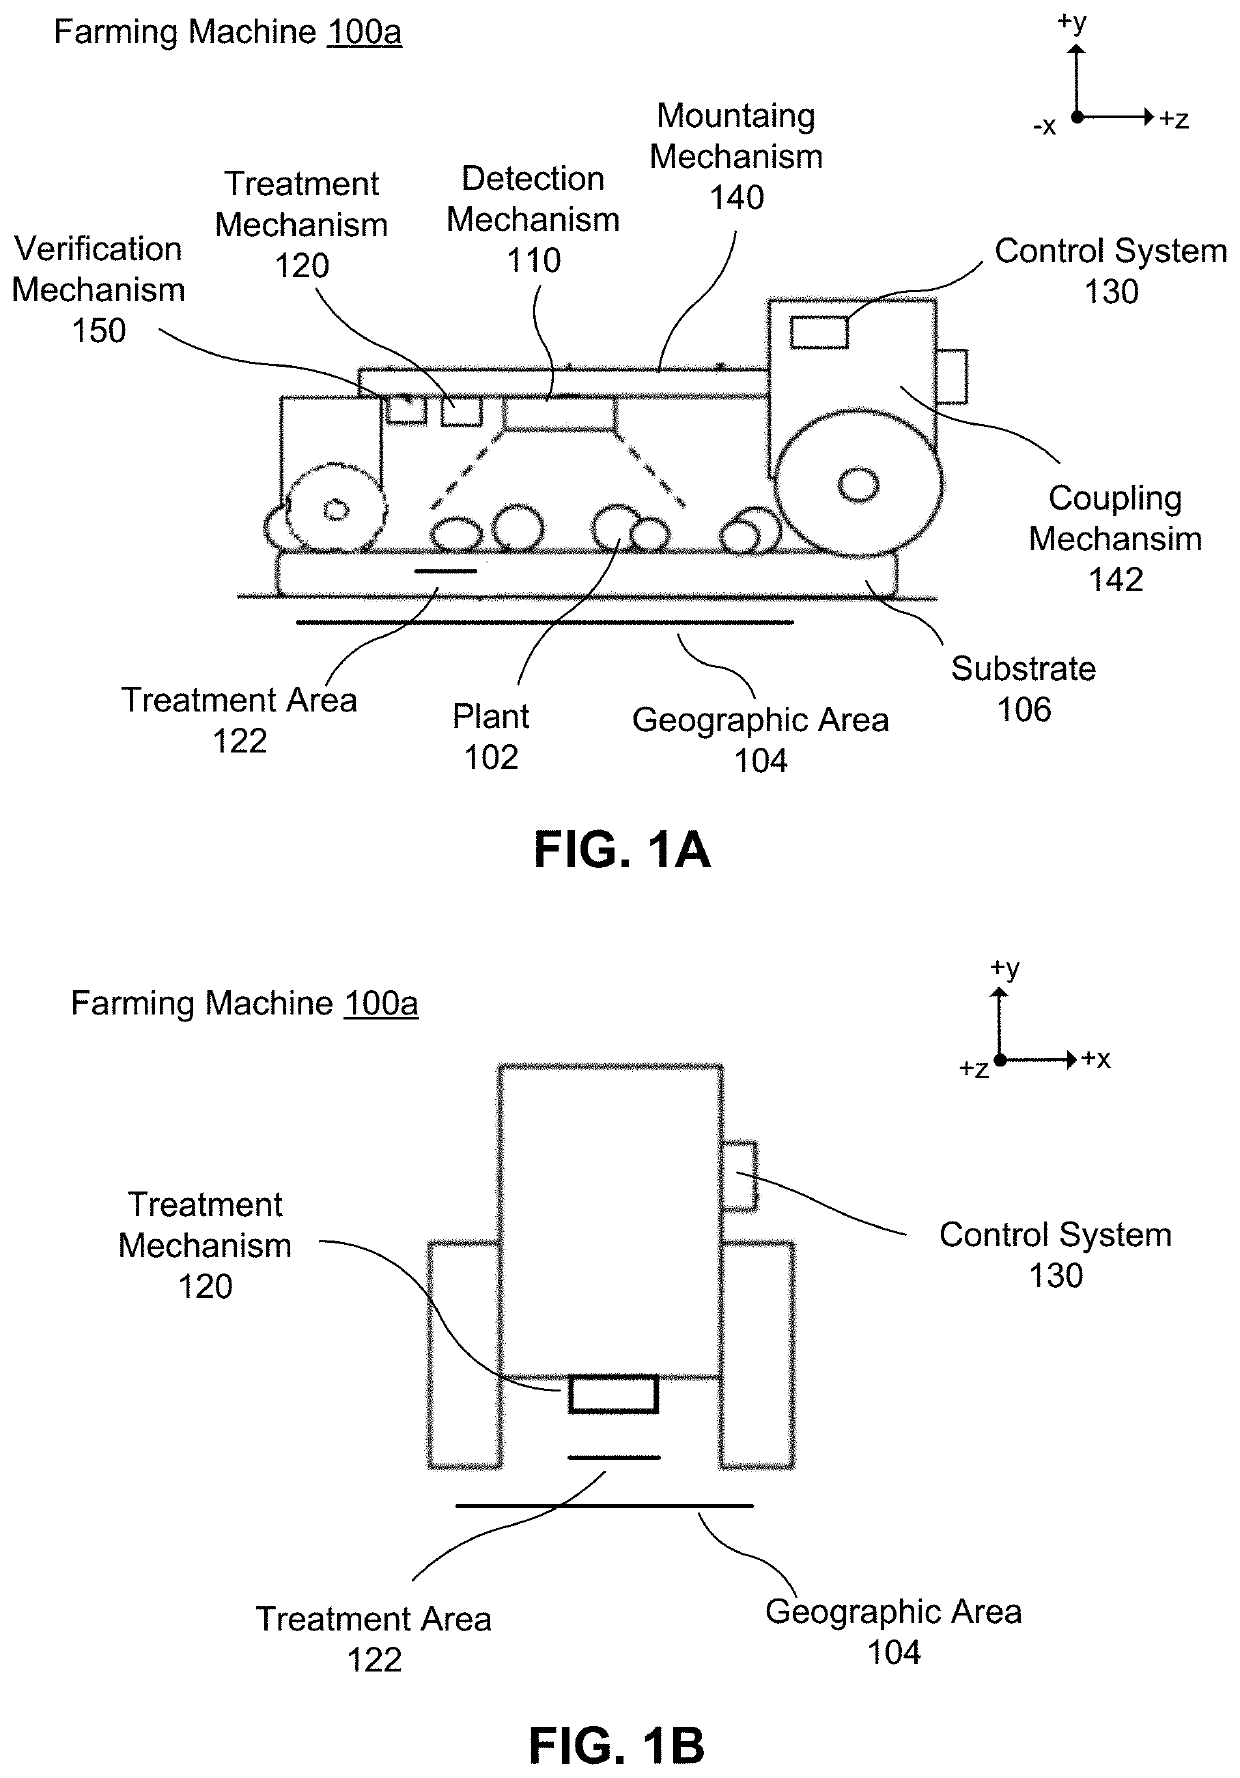 Calibration of autonomous farming vehicle image acquisition system